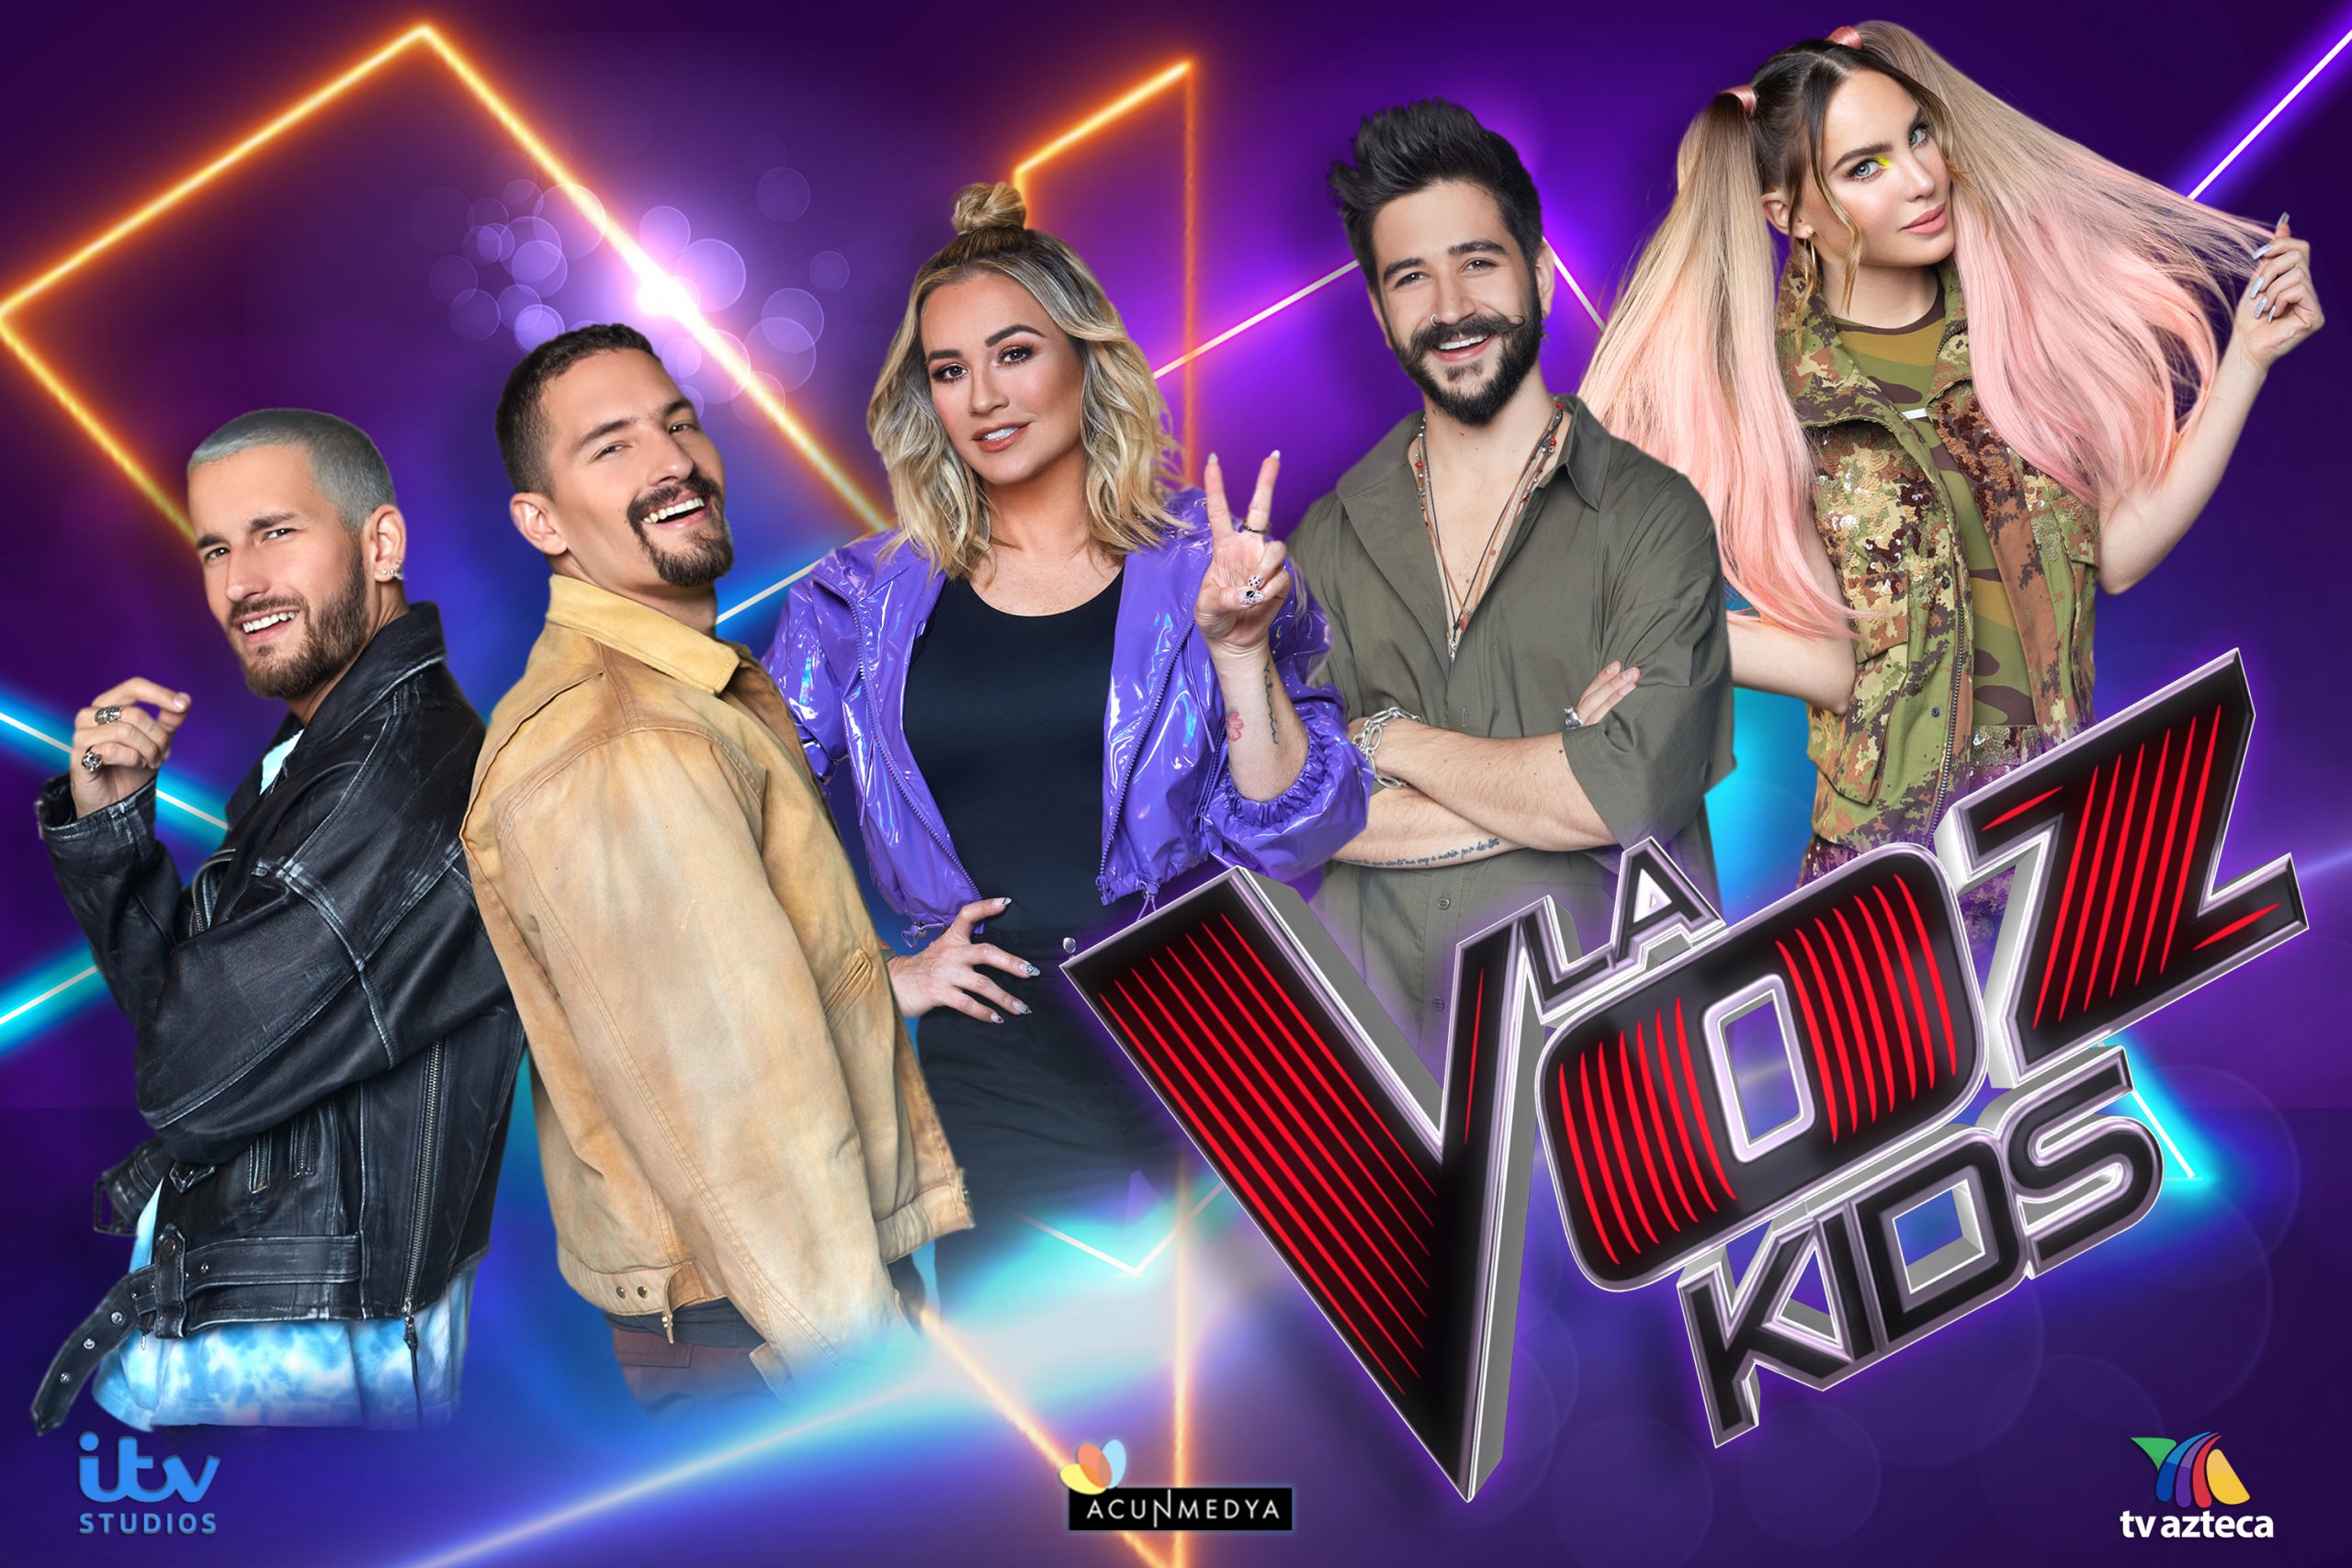 TV Azteca producirá “La Voz Kids” edición 2021: Se transmitirá a partir de marzo